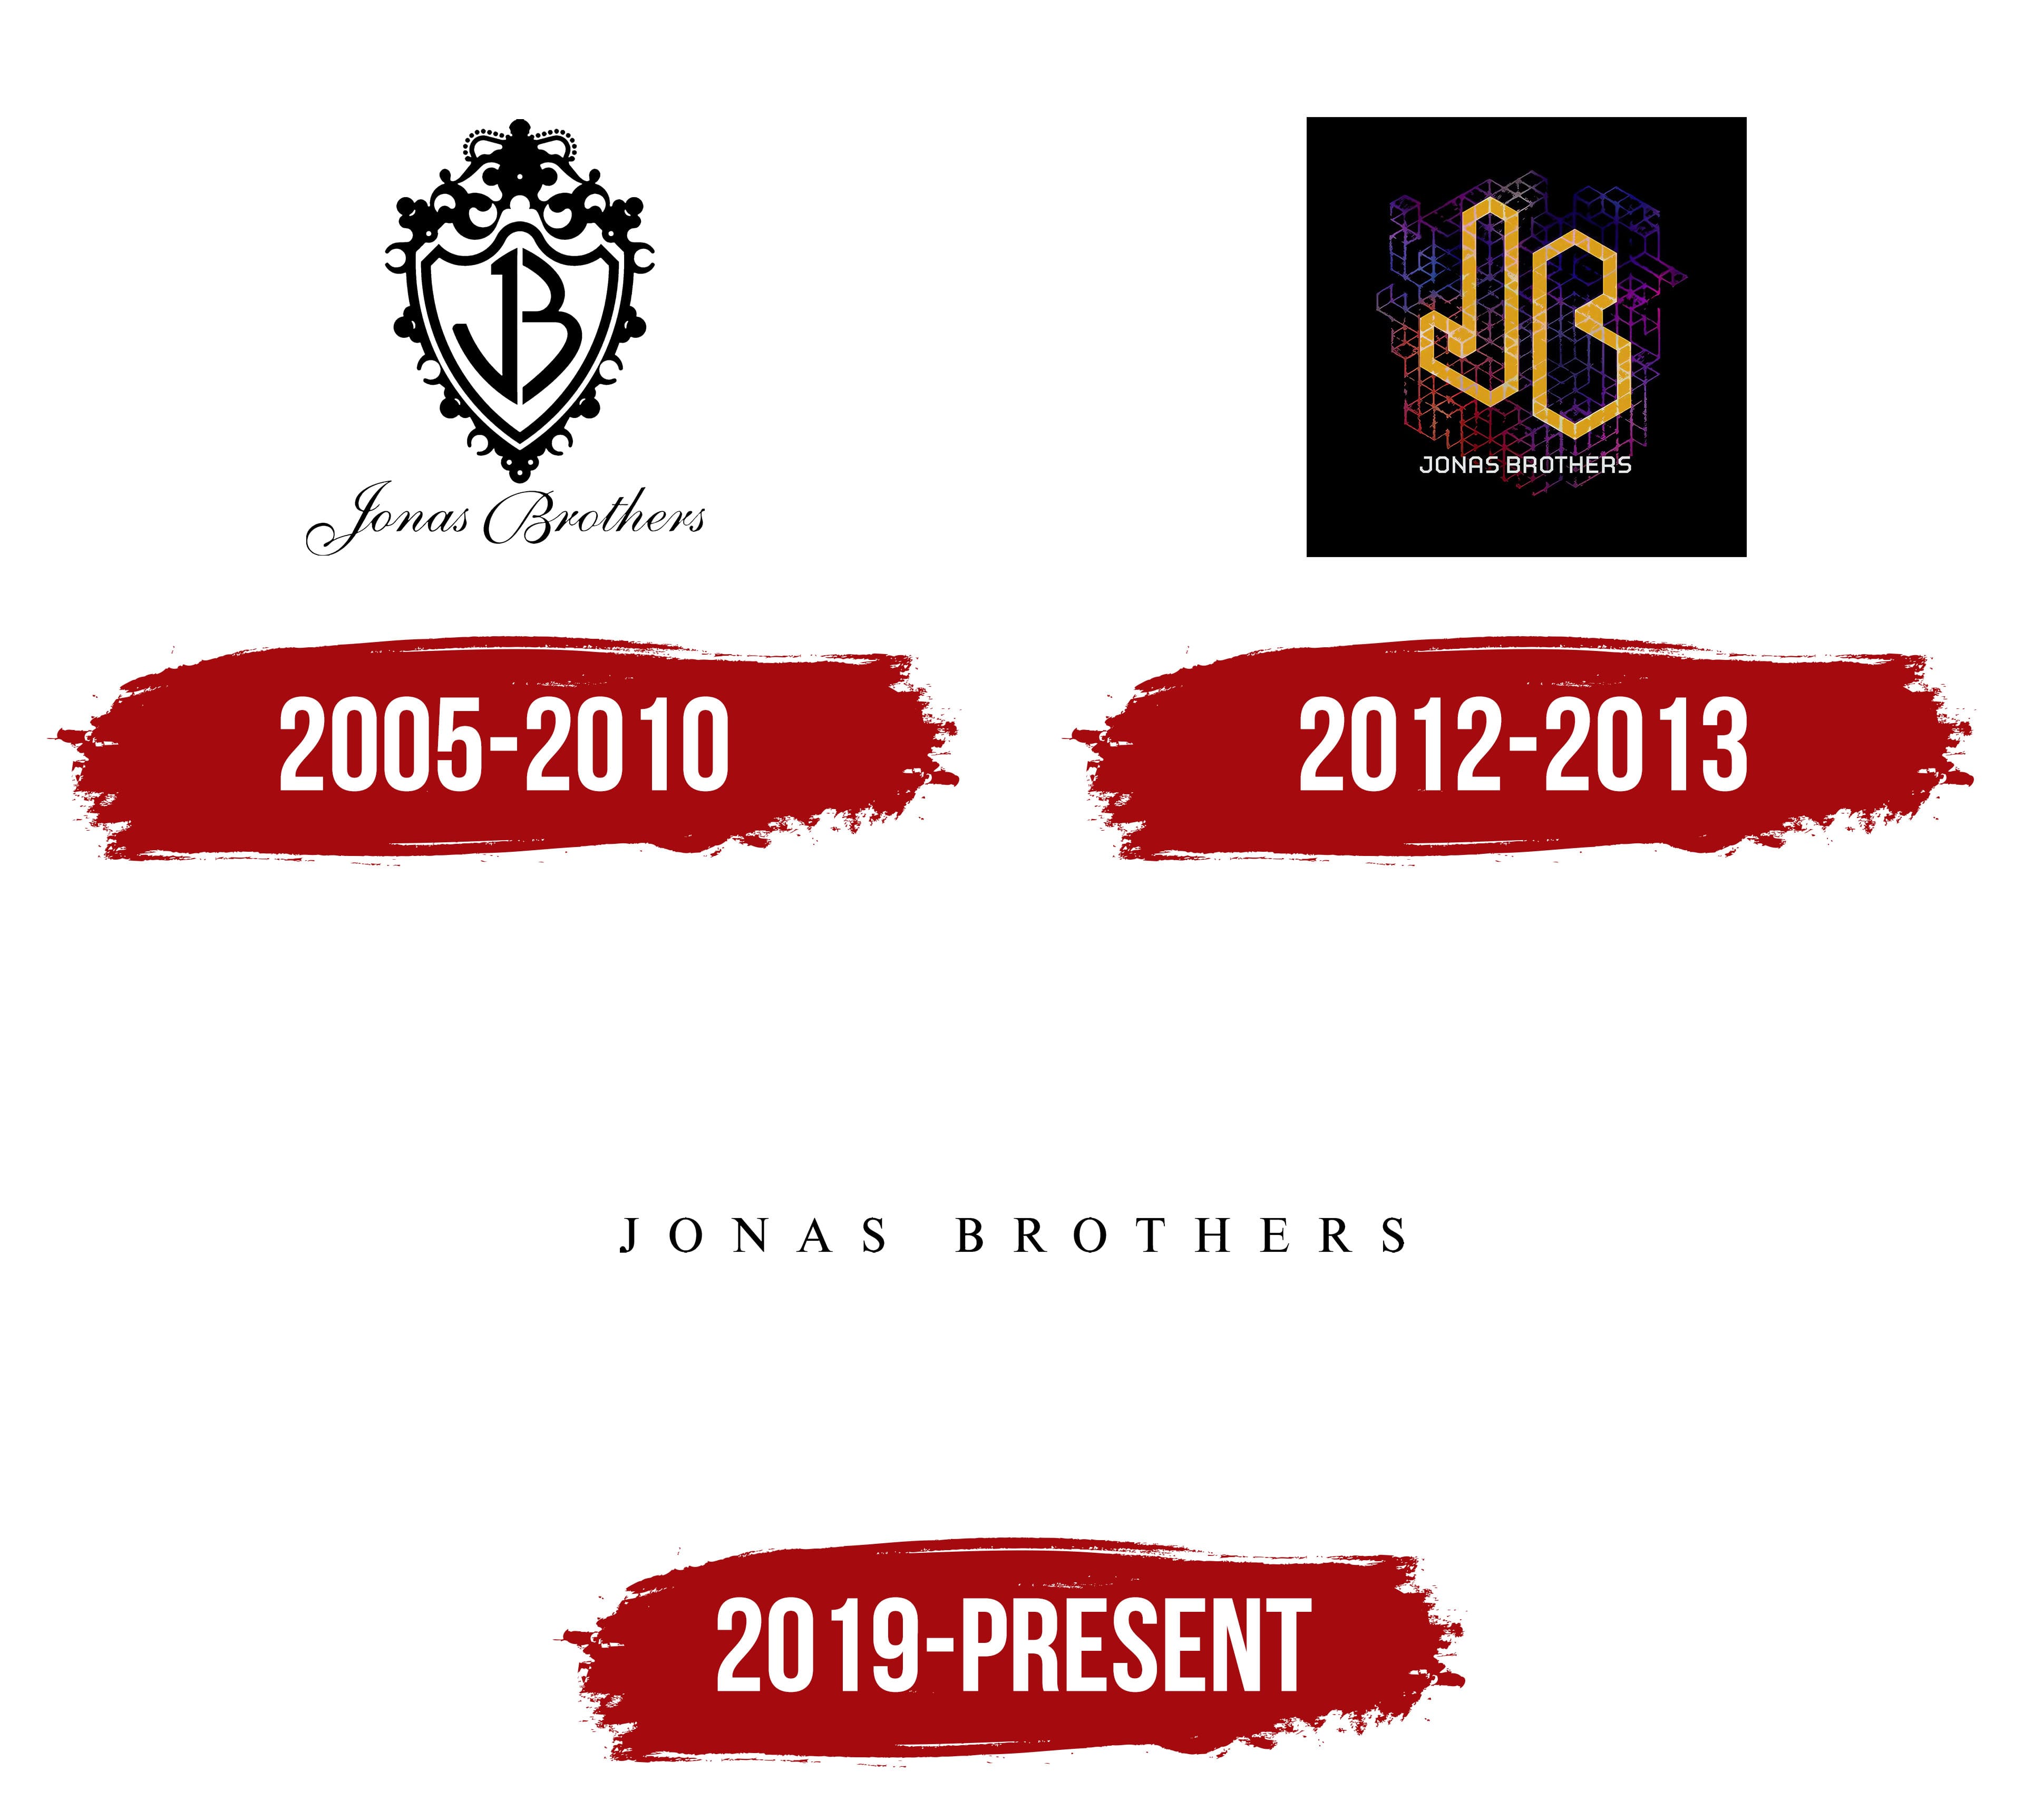 jonas brothers tour logo